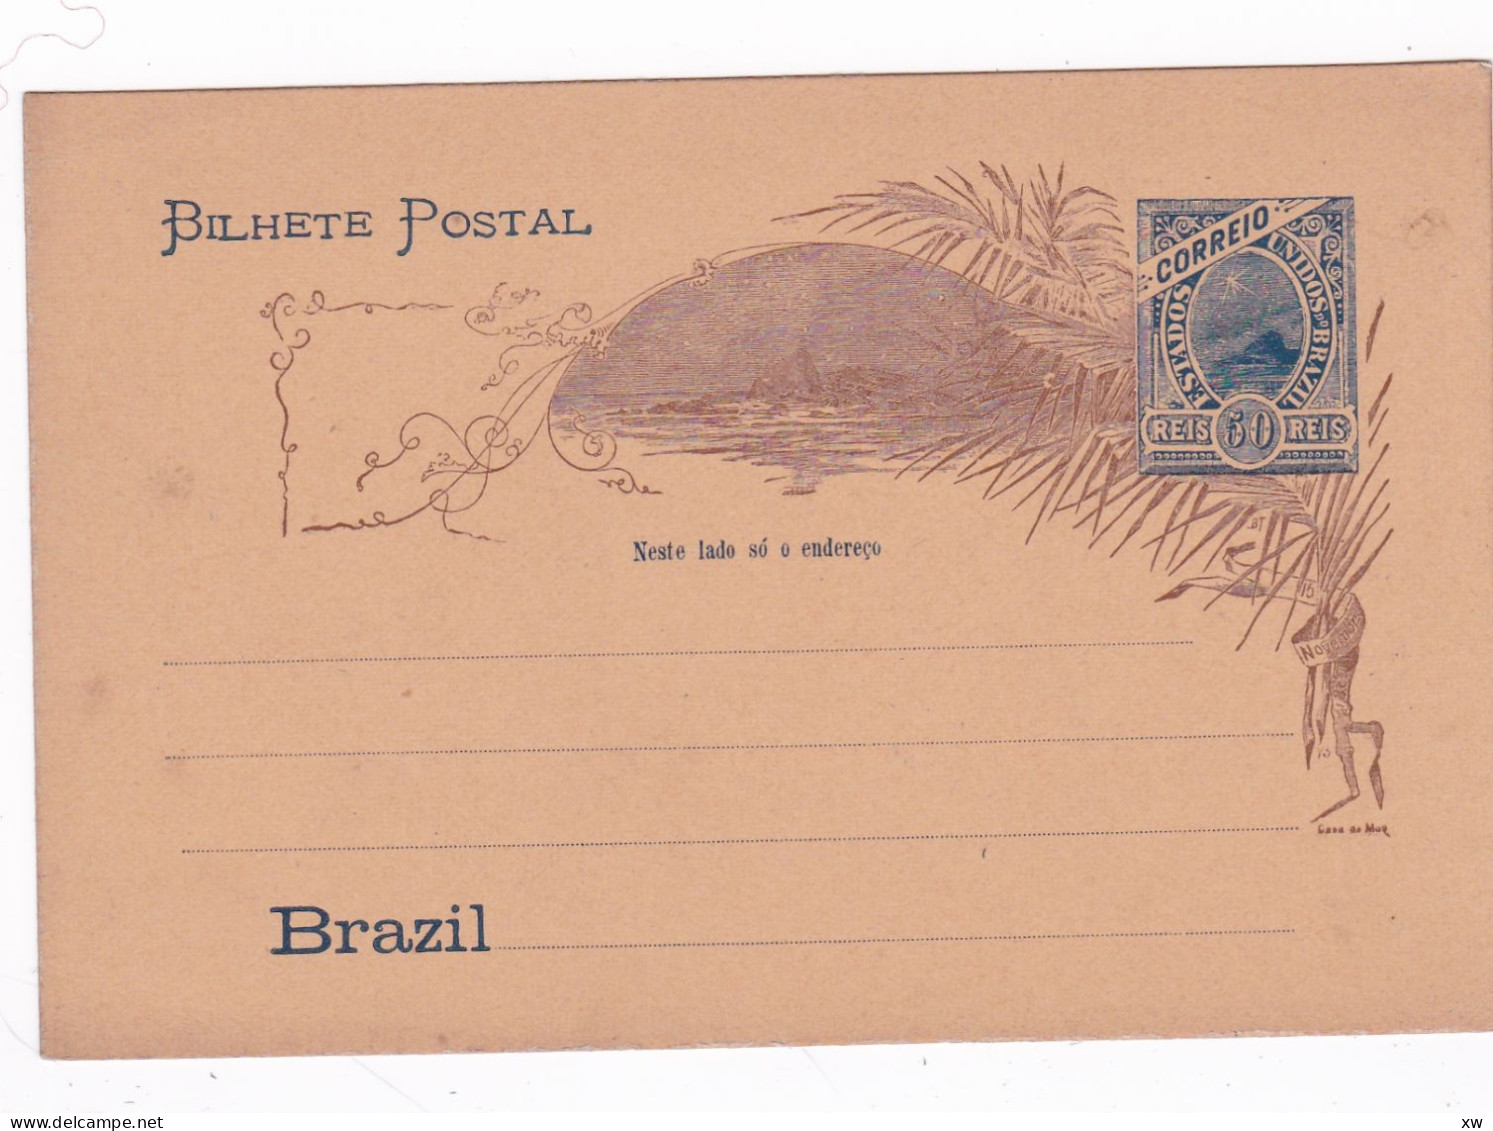 AMERIQUE - BRESIL - BRAZIL - Entier Postal Brésil Brazil (non Voyagé) 50 Reis - Covers & Documents